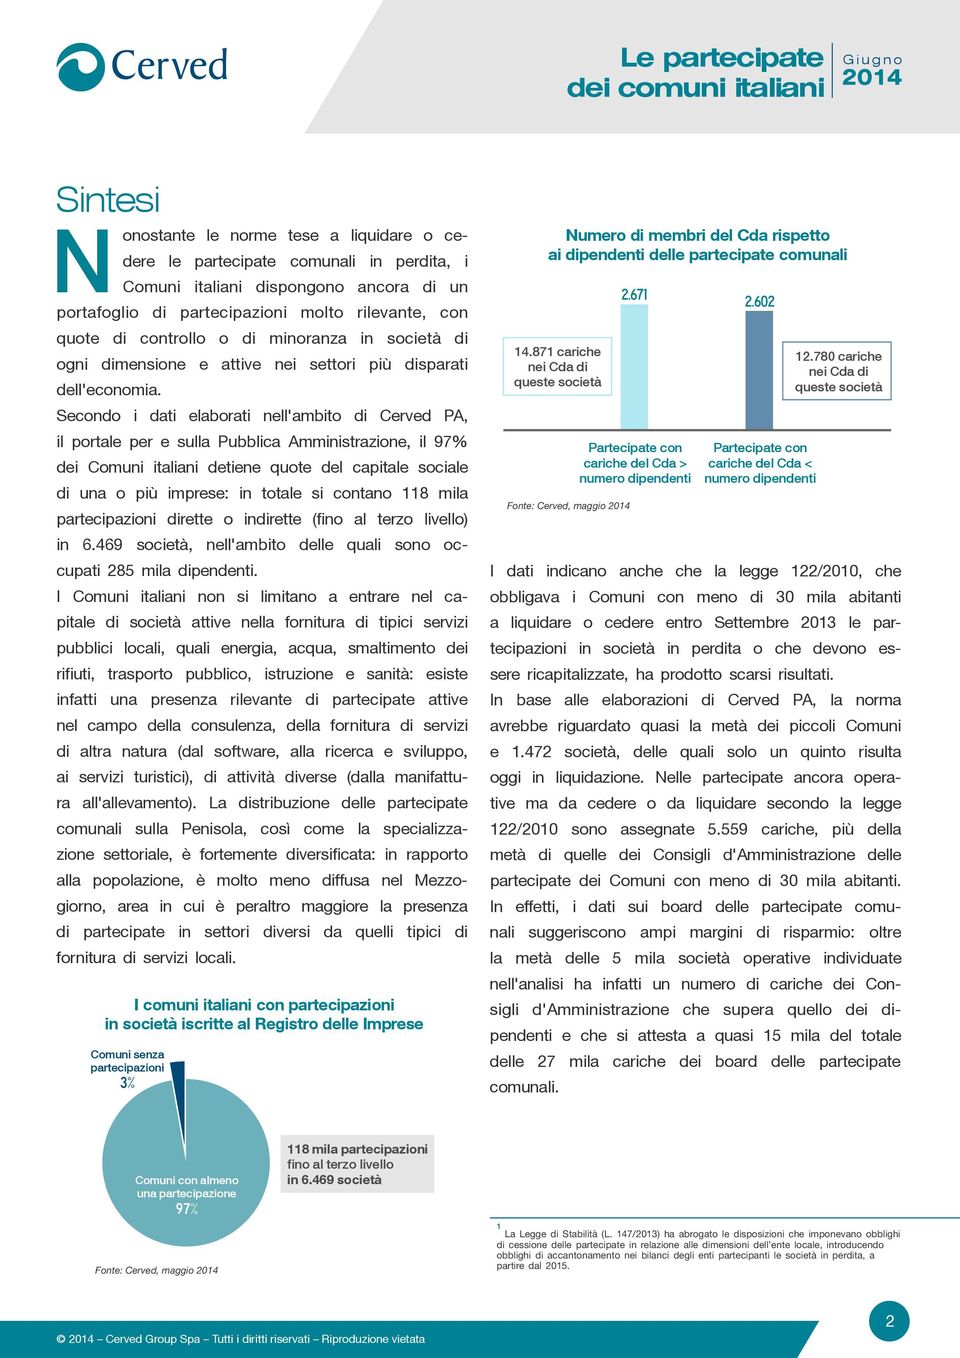 Secondo i dati elaborati nell'ambito di Cerved PA, il portale per e sulla Pubblica Amministrazione, il 97% dei Comuni italiani detiene quote del capitale sociale di una o più imprese: in totale si